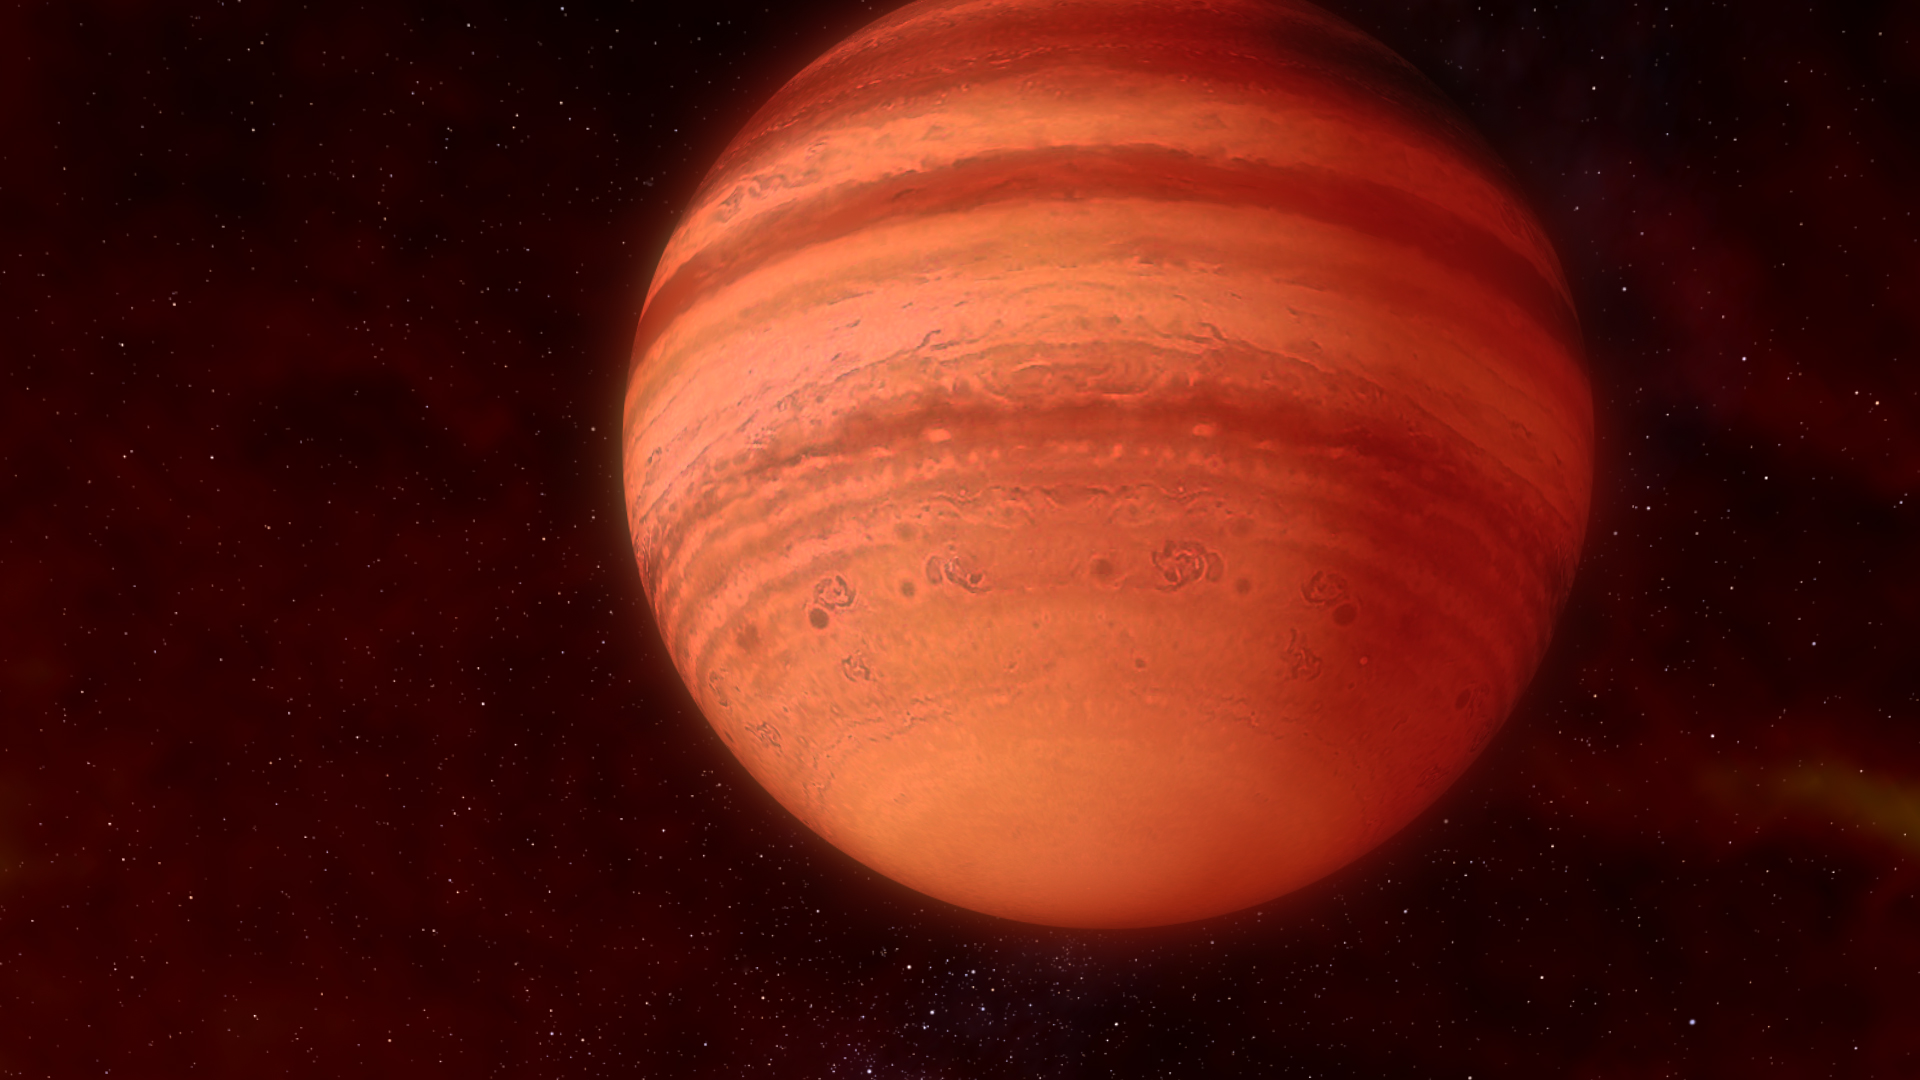 Wasp 33b er en "Ultrahot Jupiter" med aluminiumoxid i atmosfæren